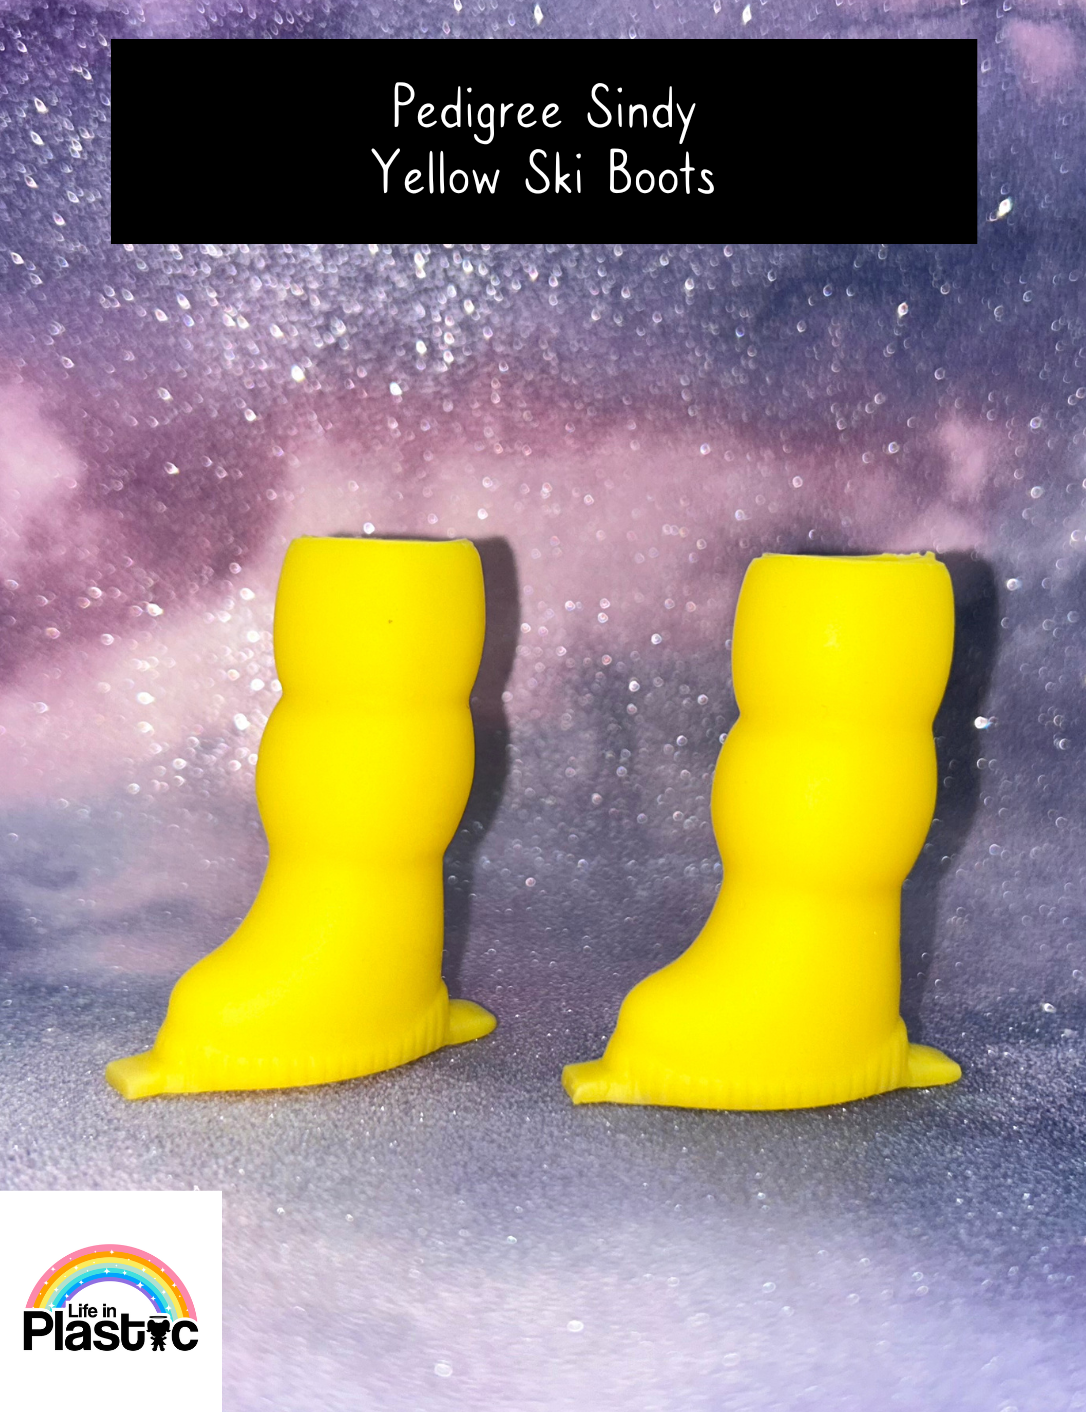 Pedigree Sindy Yellow Ski Boots